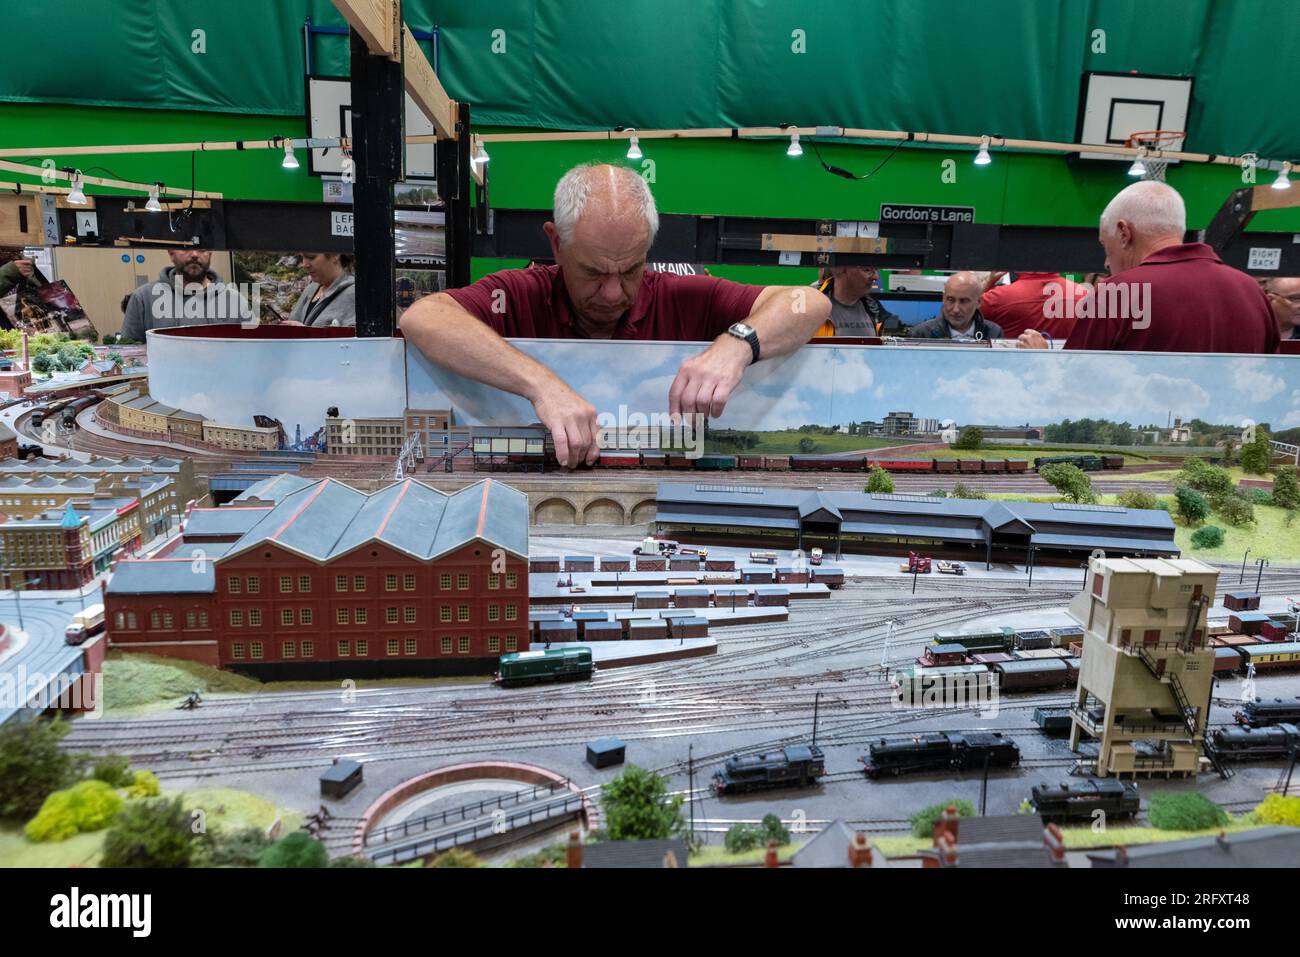 James Street mostra di modello ferroviario a scartamento N in mostra in una mostra di modellini ferroviari a Essex, Regno Unito. Grande ferrovia dell'era del vapore Foto Stock